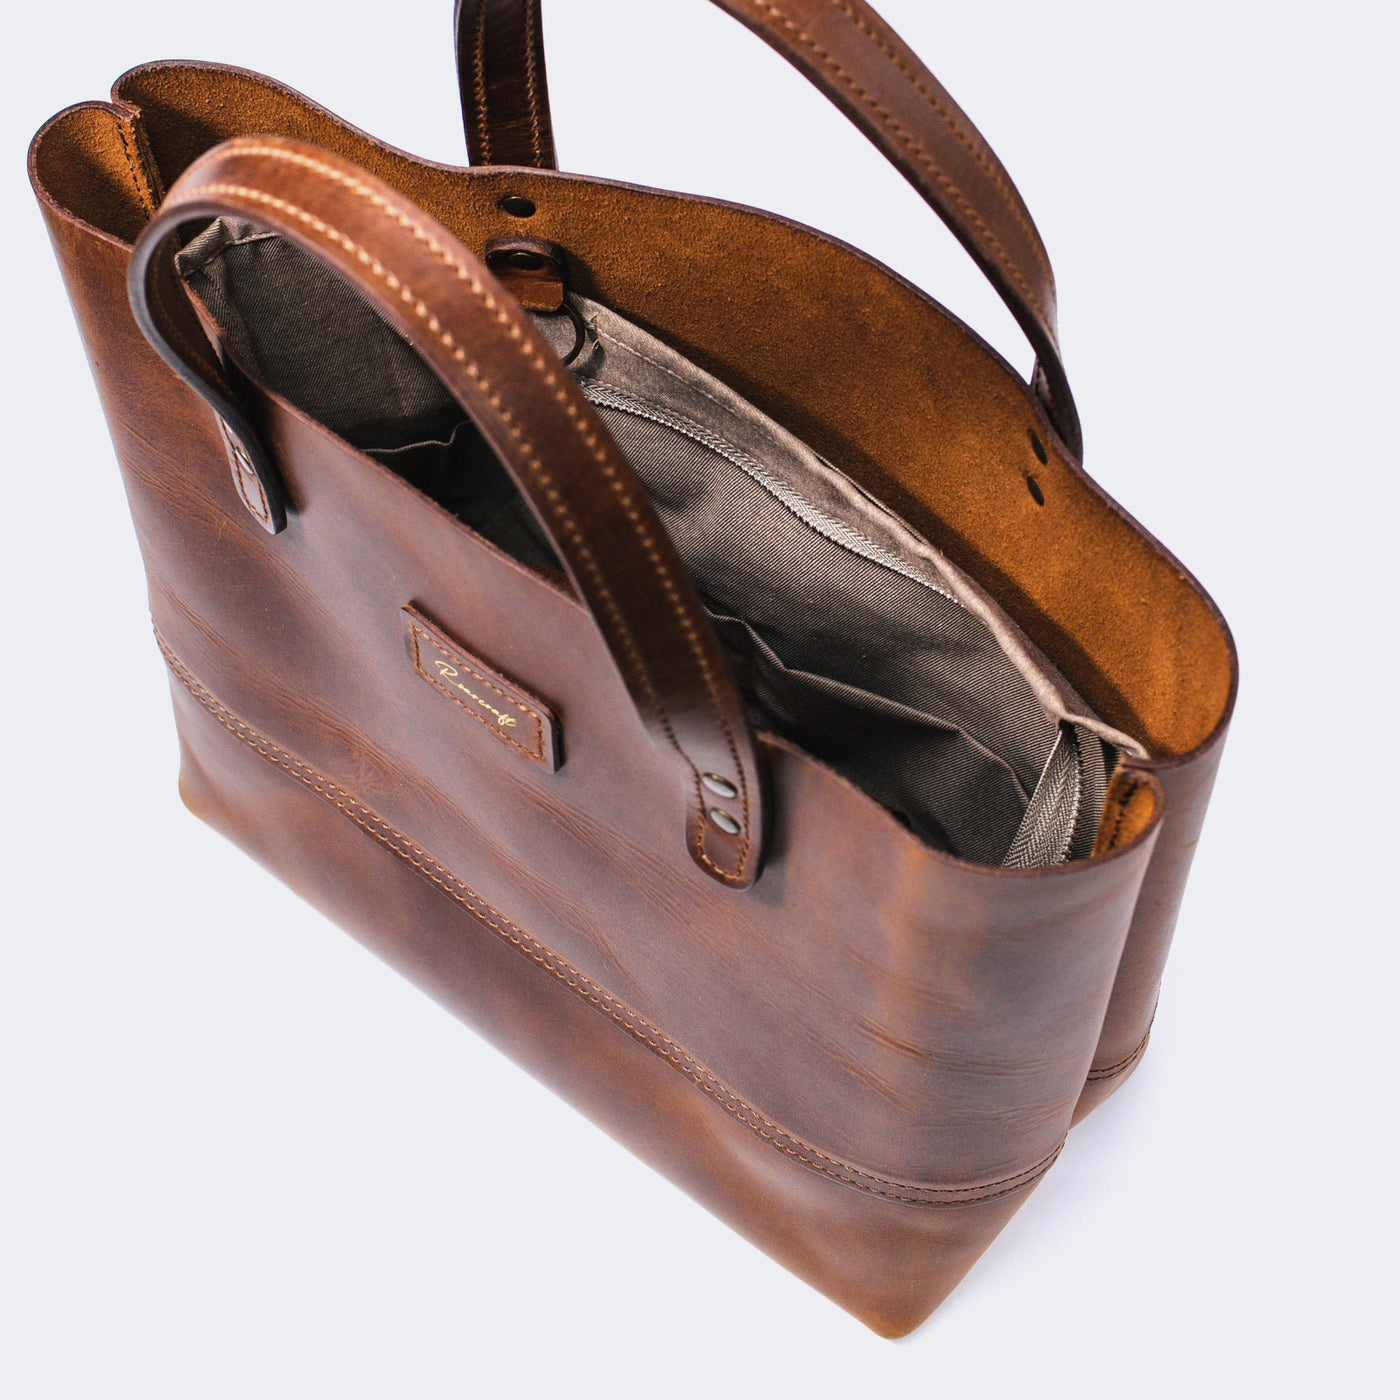 Handbag Organiser Insert, Brown - The Leather Store